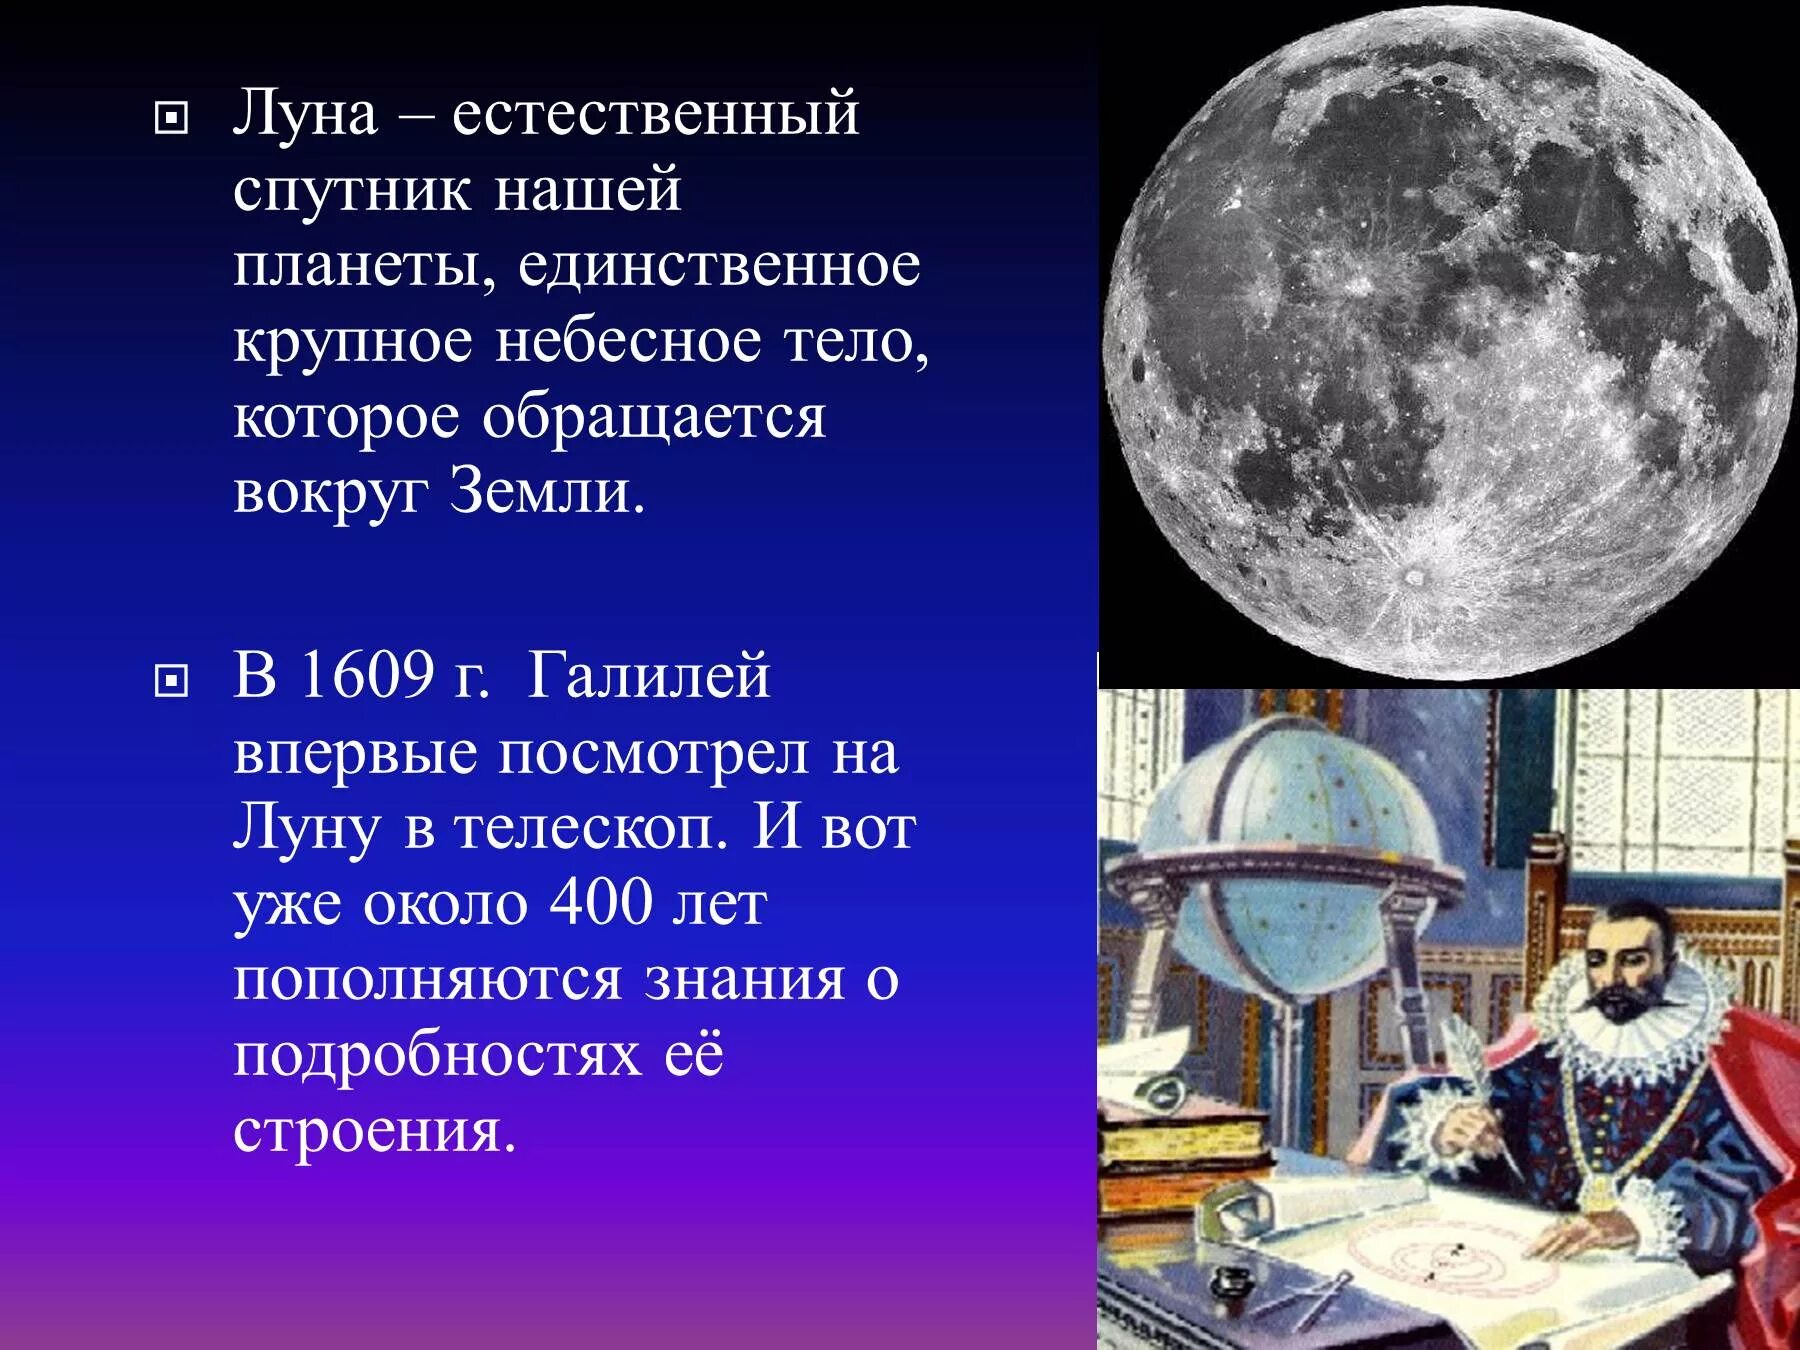 Луна 5 мир. Луна естественный Спутник земли. Луна для презентации. Общие сведения о Луне. Луна единственный естественный Спутник нашей планеты.